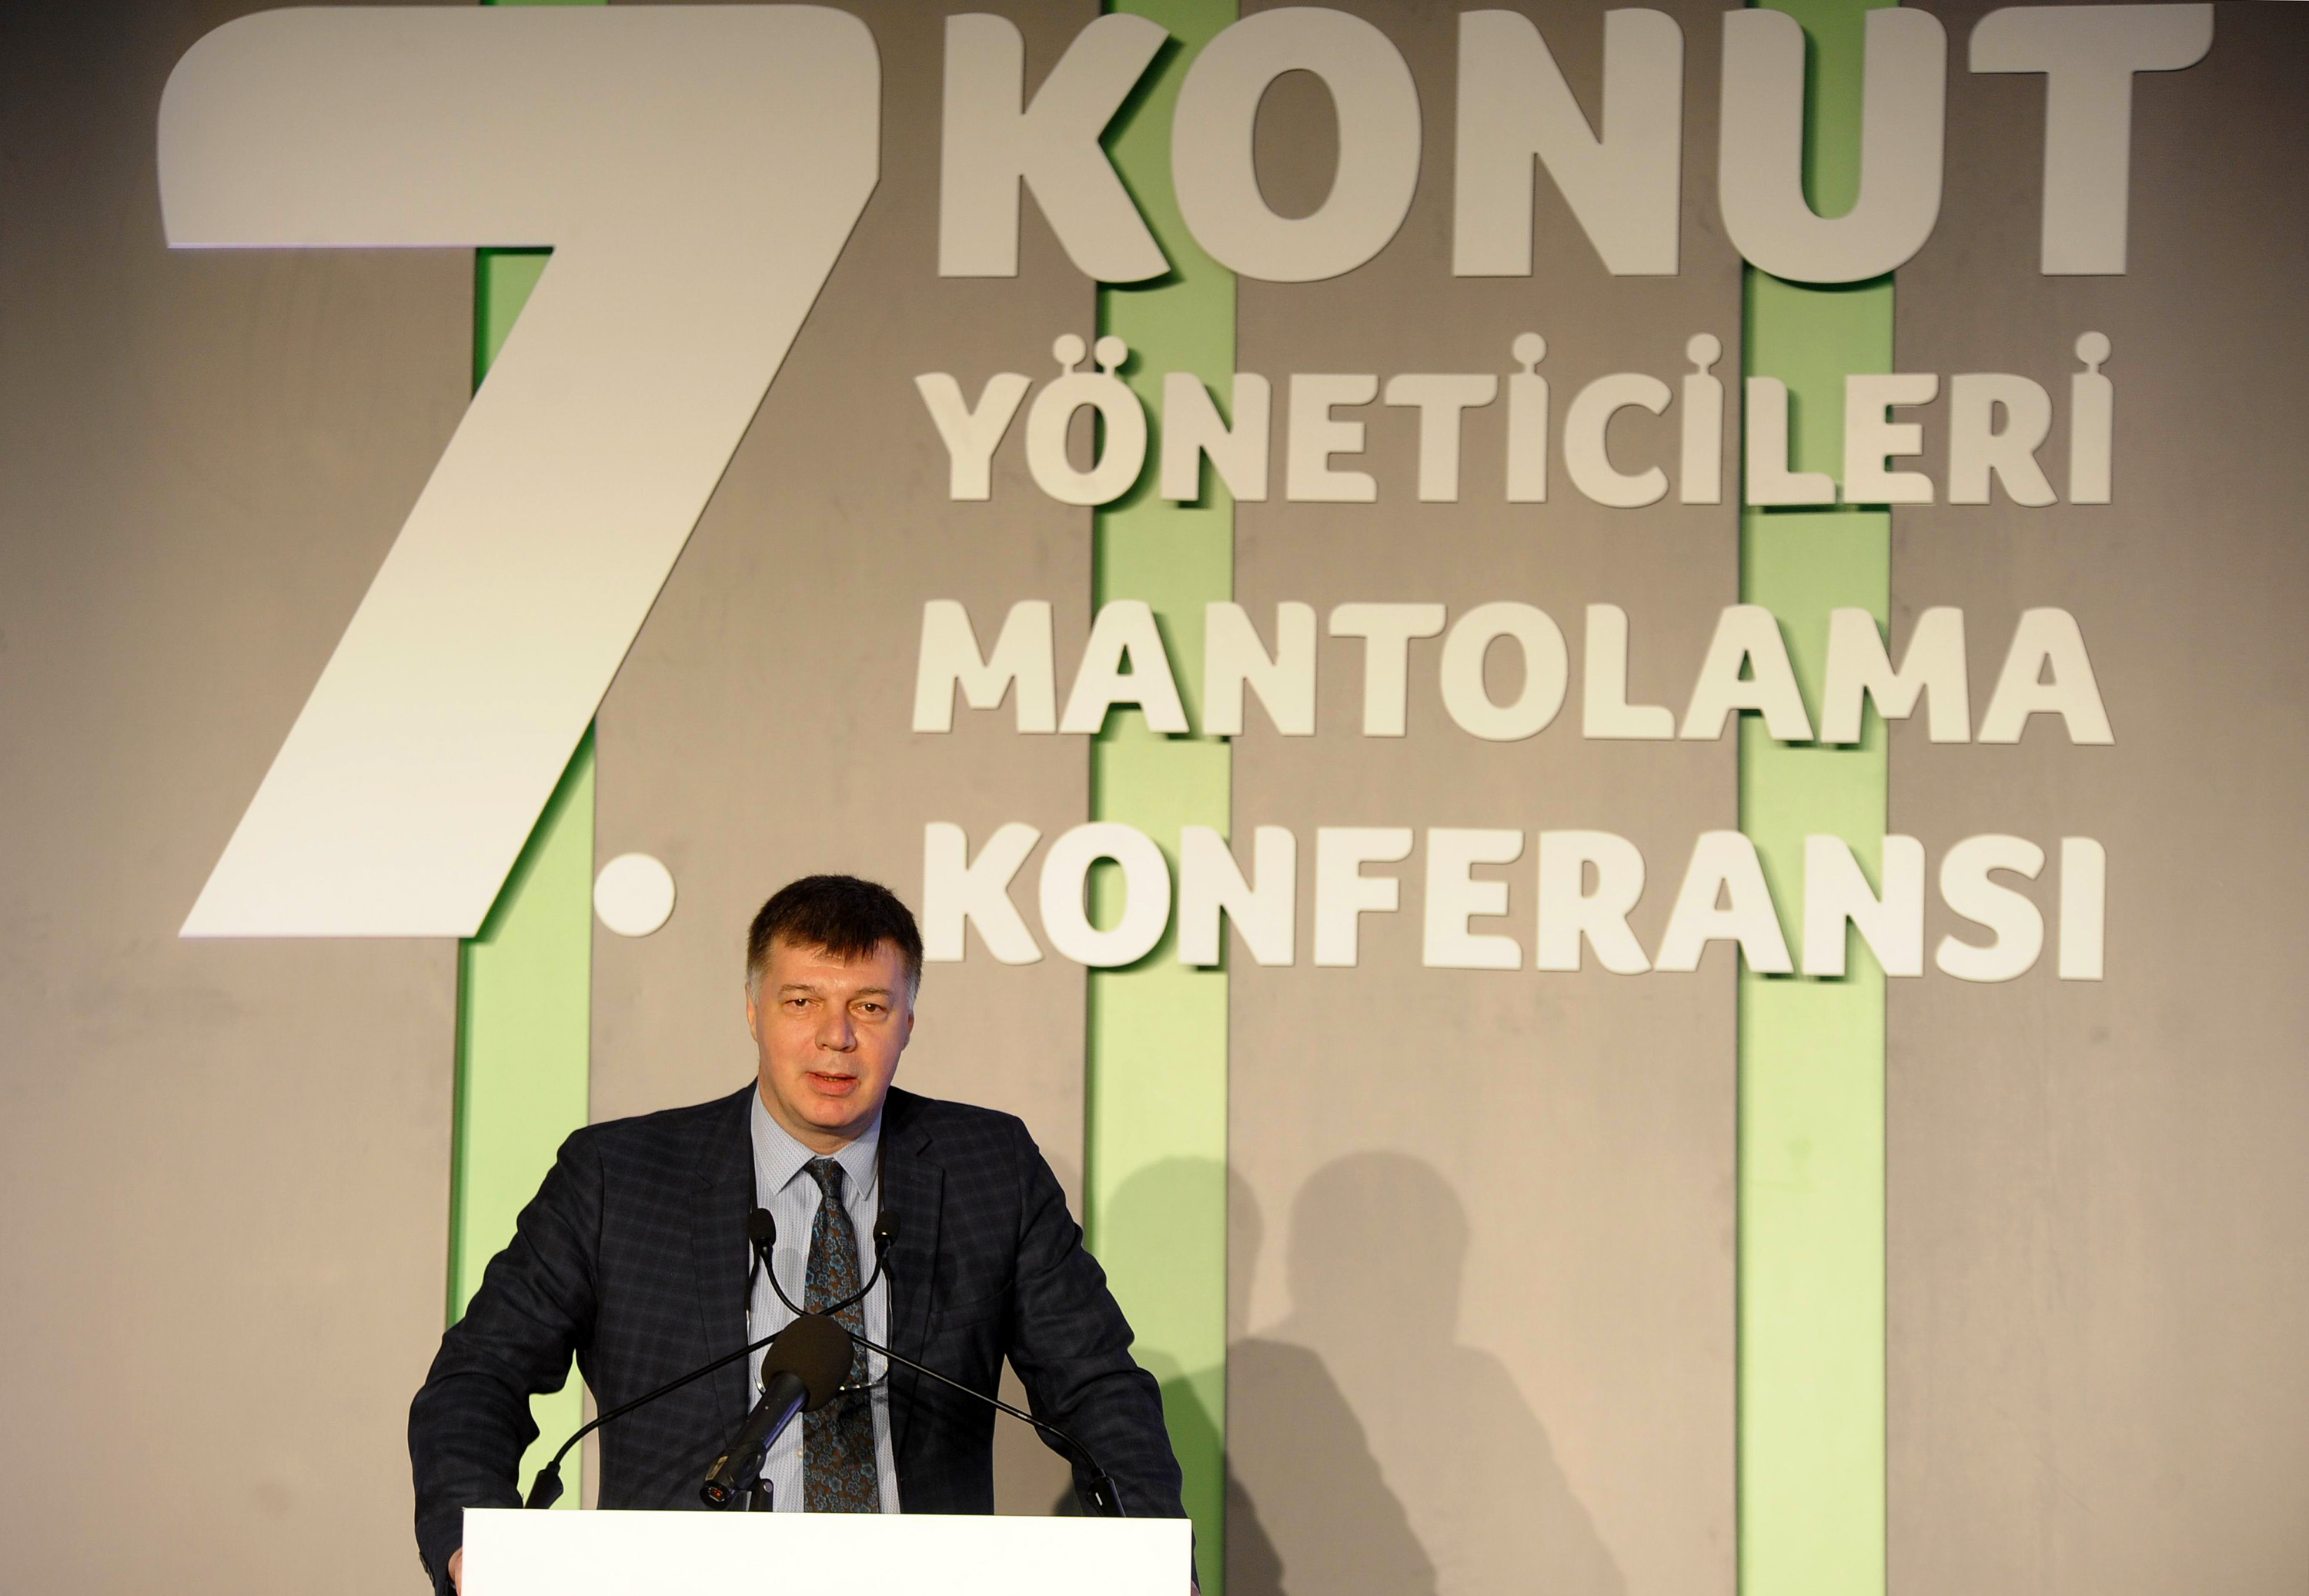 Yedinci Konut Yöneticileri Mantolama Konferansı İstanbul'da gerçekleşti-2826